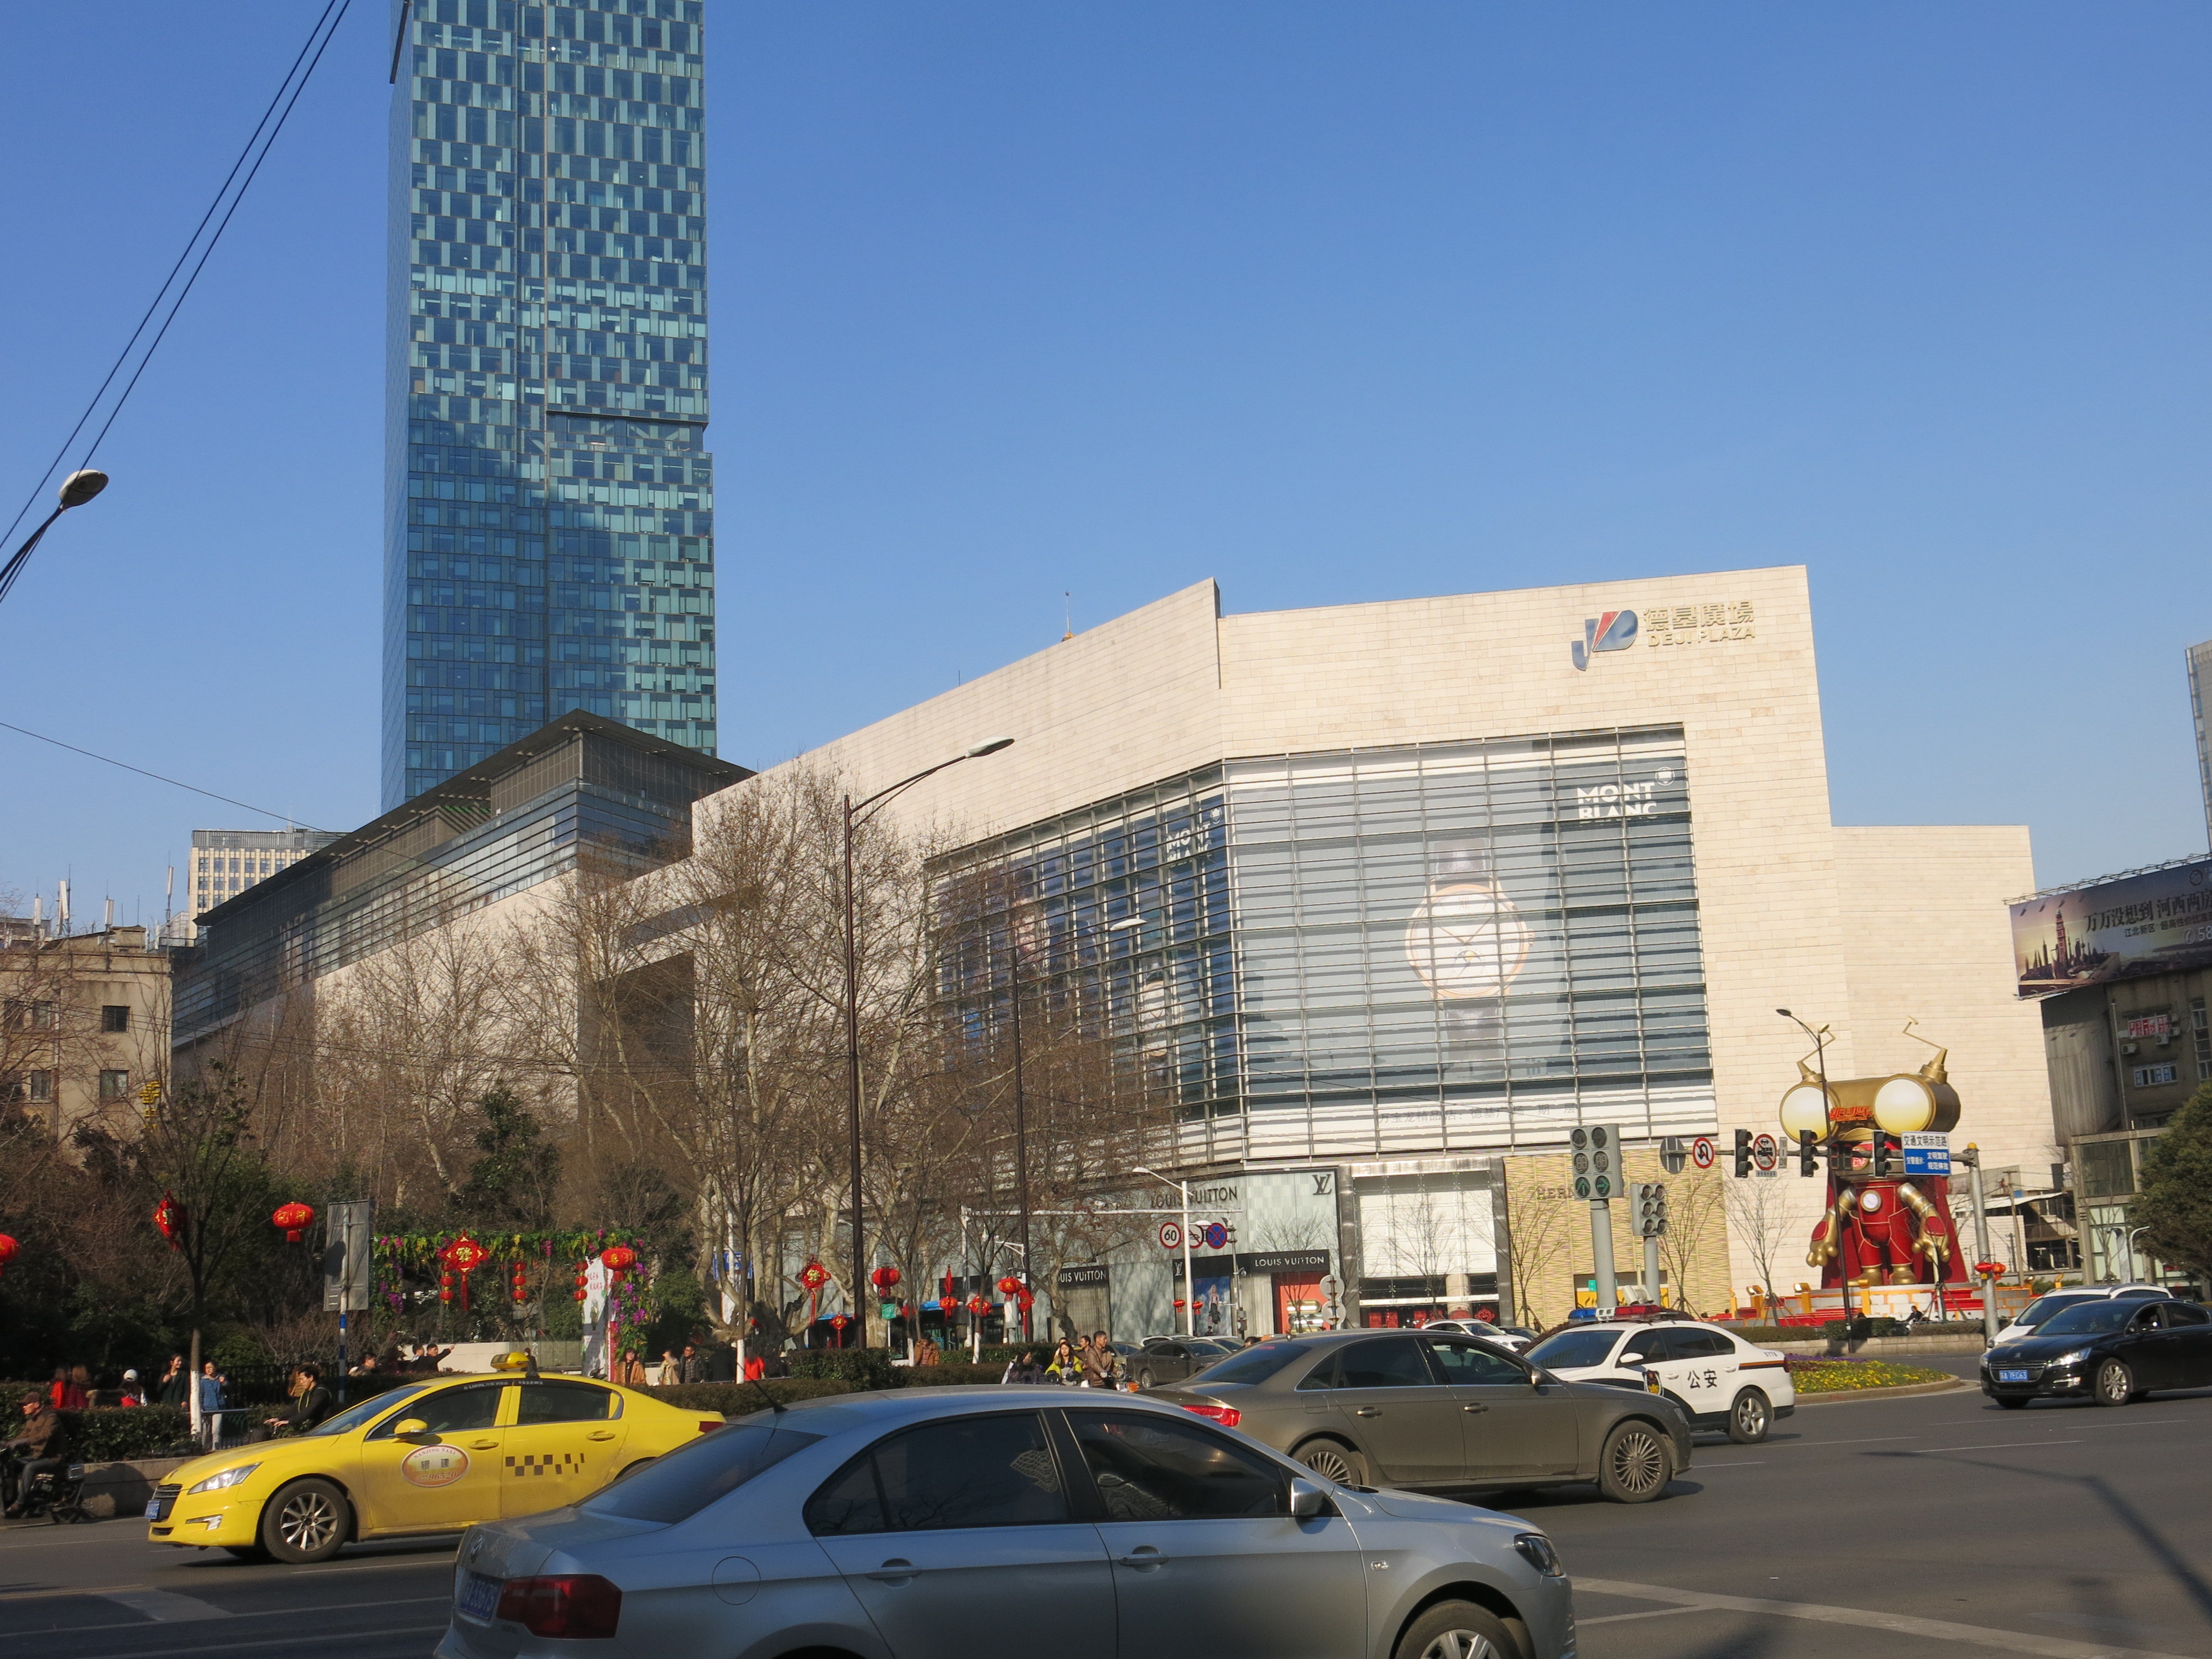 【携程攻略】南京德基广场购物,这是南京最高大上的商场吧,规模很大